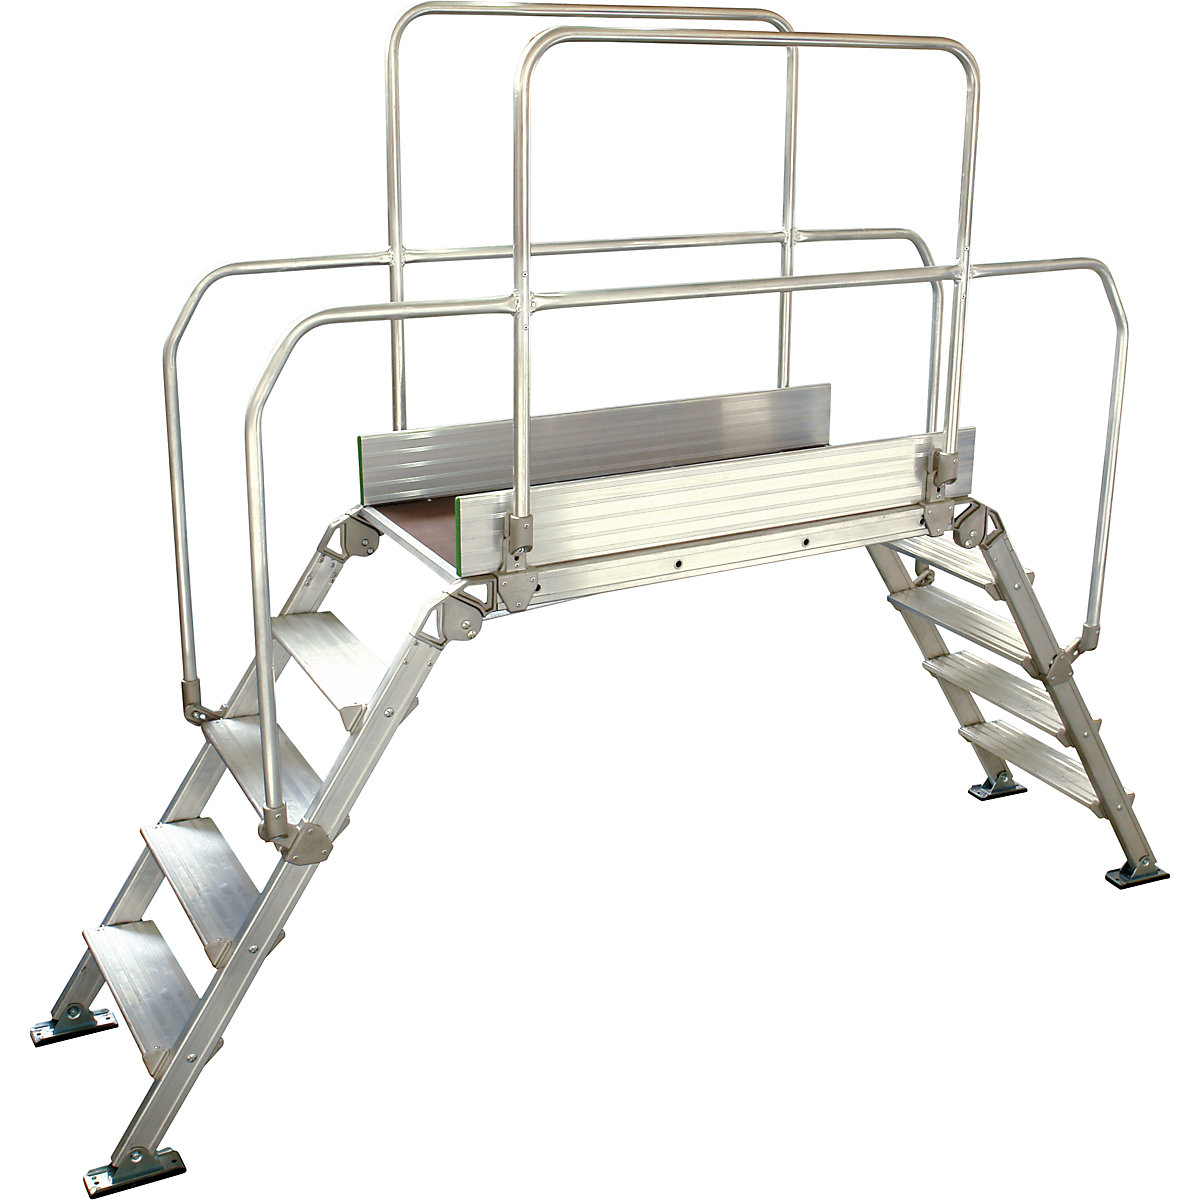 Aluminium ladderbrug, totale belasting 200 kg, 5 treden, platform 1200 x 530 mm-3